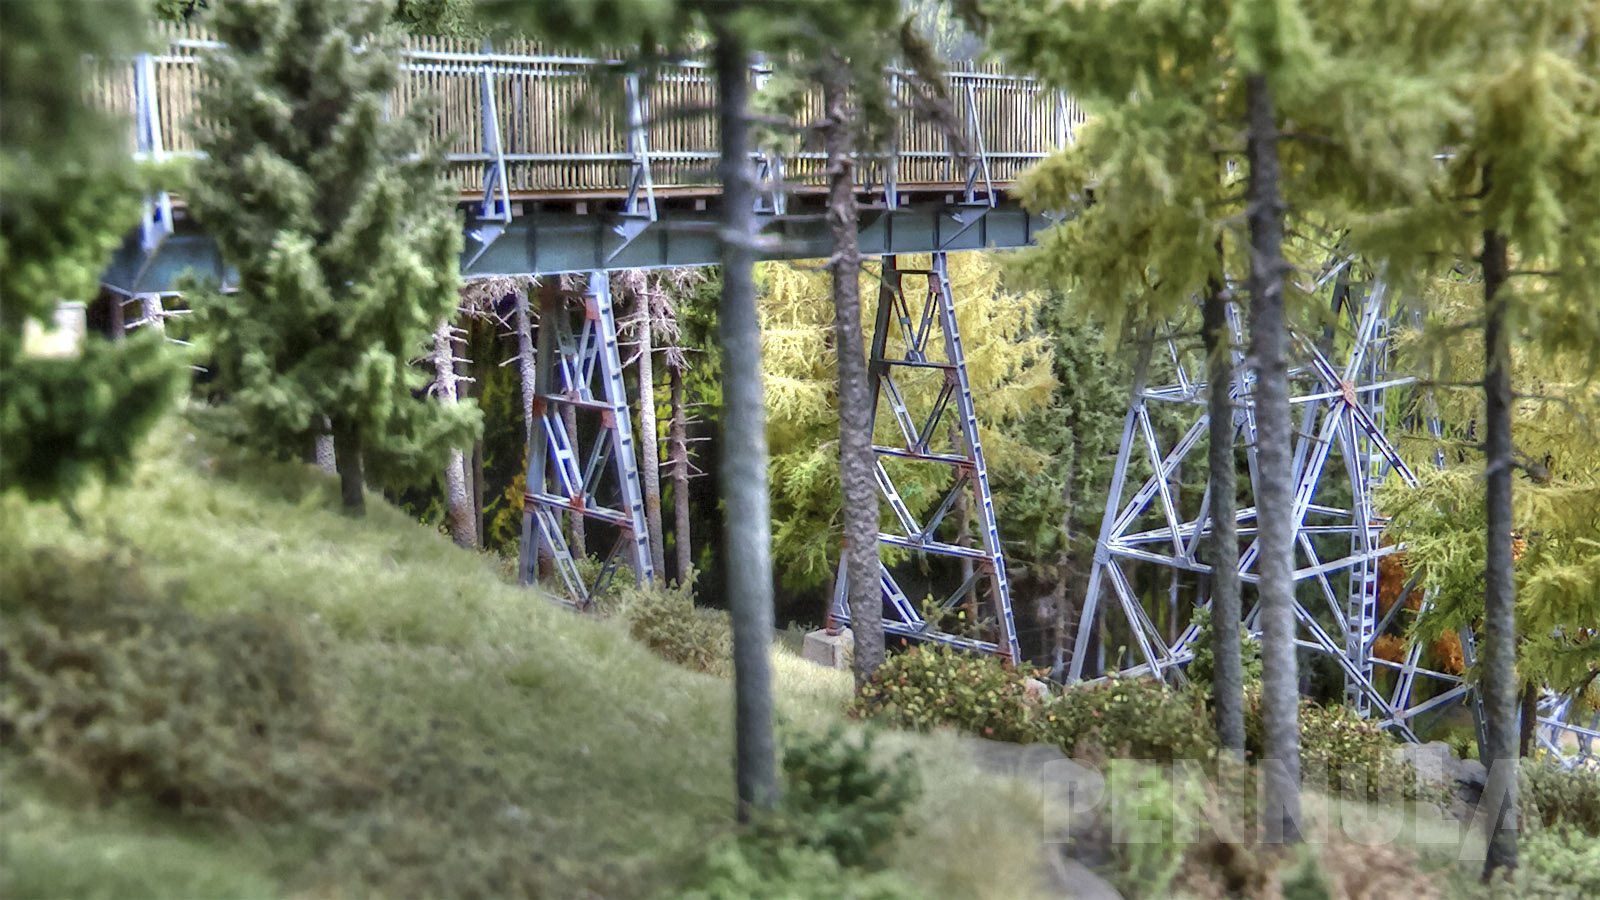 Die genietete Stahlbrücke war bis zum Jahre 1967 in Betrieb, danach war sie zehn Jahre ungenutzt, weil auch der Zugverkehr eingestellt wurde.